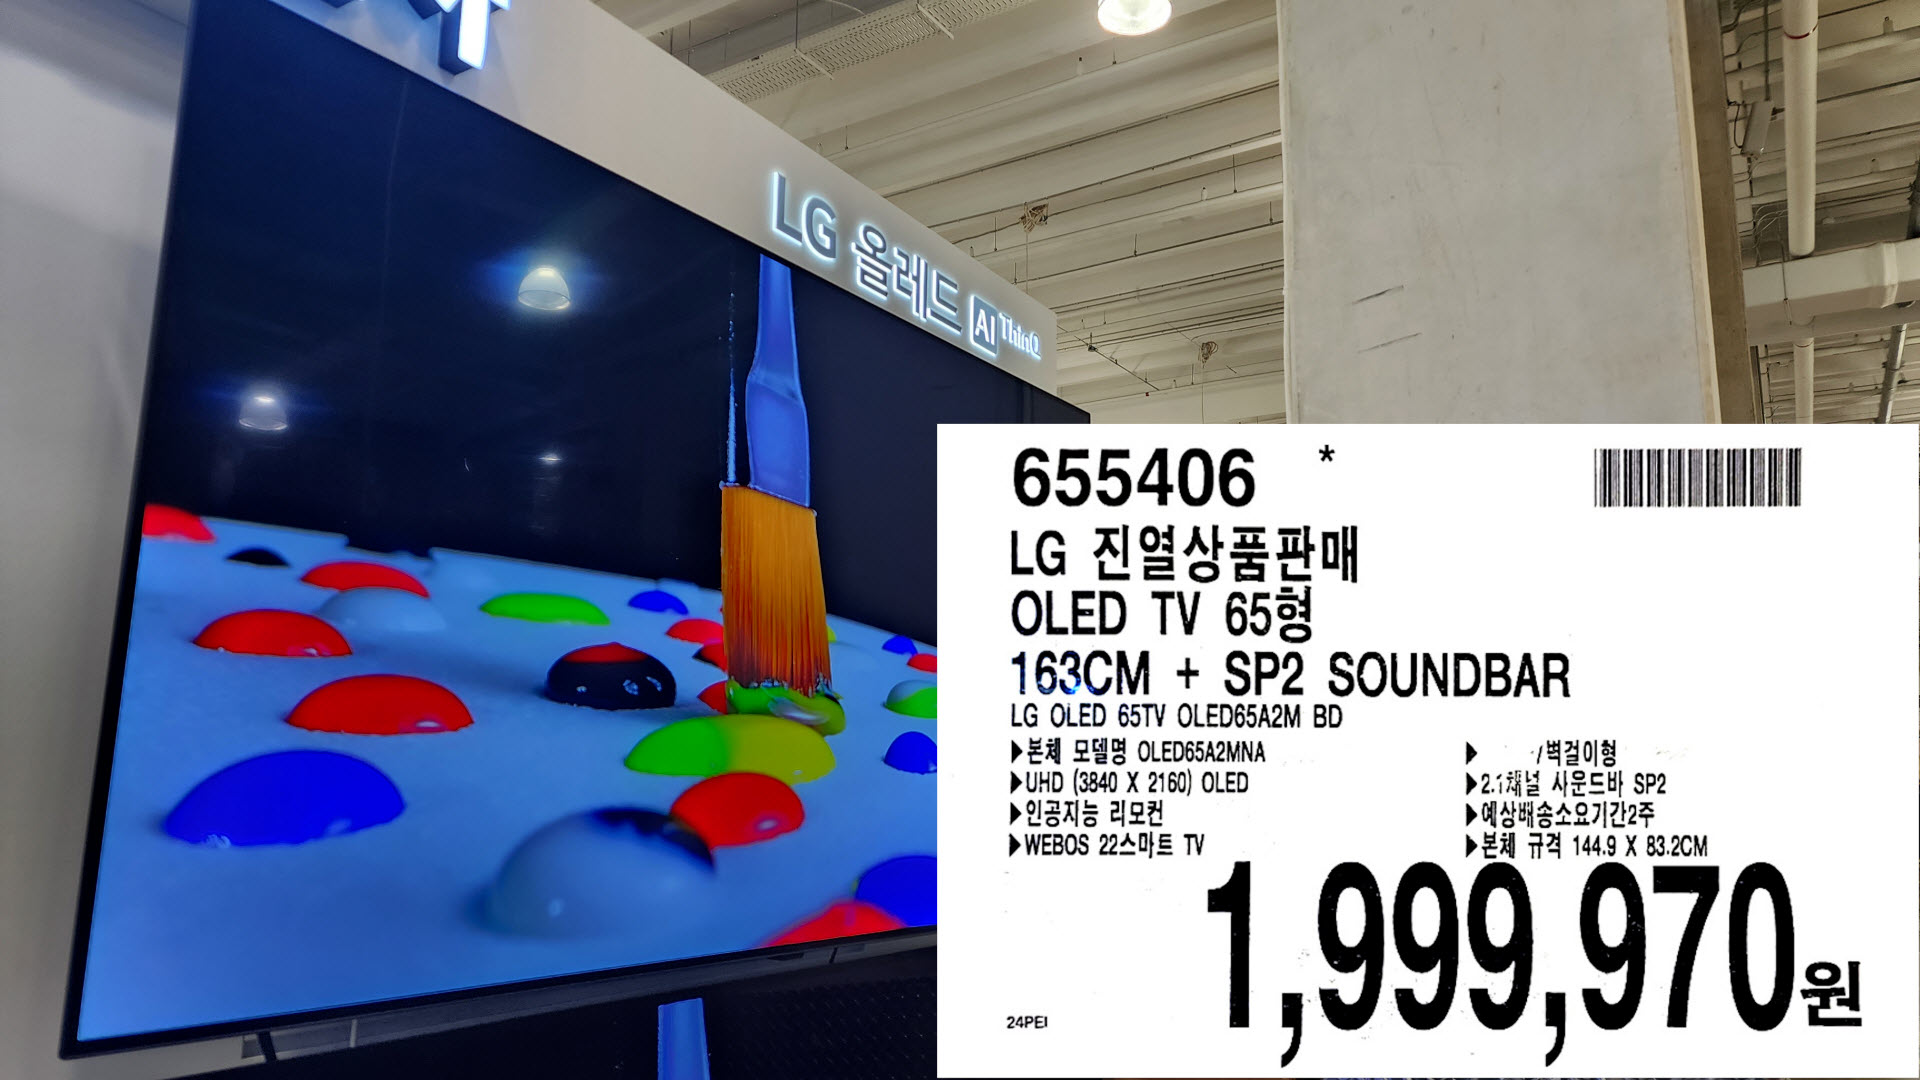 LG 진열상품판매
OLED TV 650
163CM + SP2 SOUNDBAR
LG OLED 65TV OLED65A2M BD
E OLED65A2MNA
UHD (3840 X 2160) OLED
▶ 인공지능 리모컨
▶WEBOS 22 DE TV
▶벽걸이형
▶2.1채널 사운드바 SP2
▶예상배송소요기간2주
▶ 본체 규격 144.9 X 83.2CM
1&#44;999&#44;970원